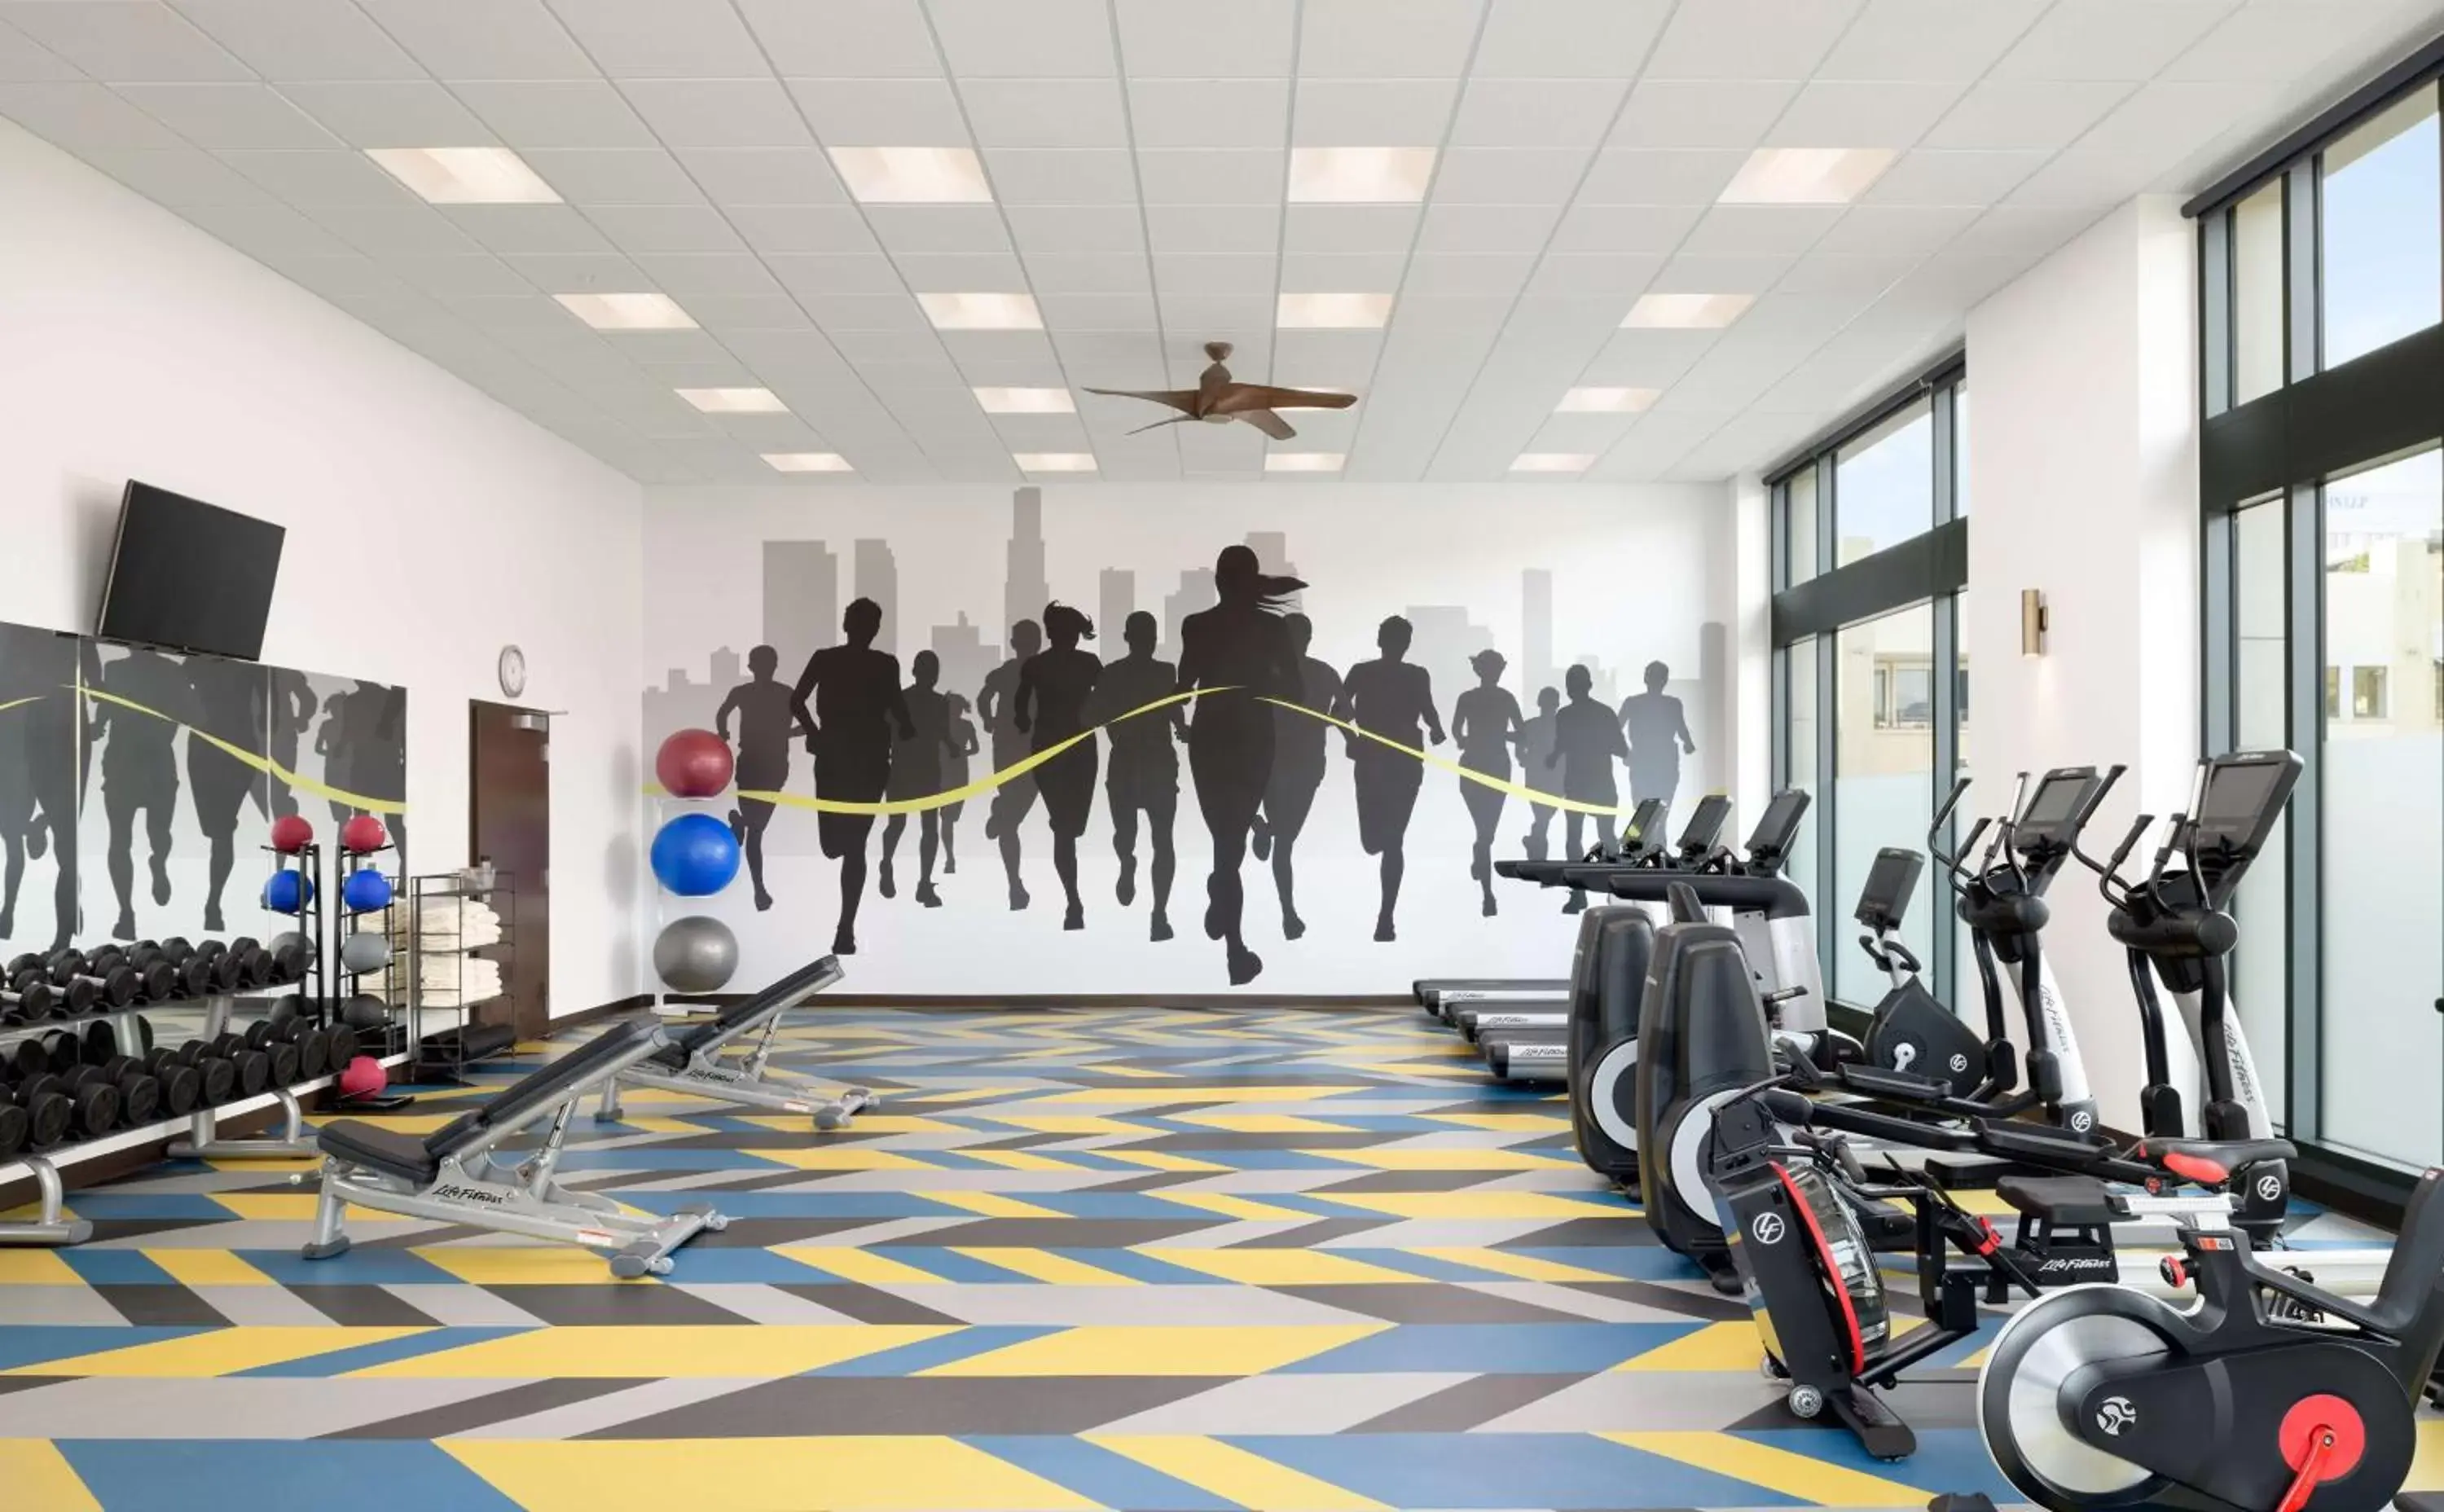 Fitness centre/facilities, Fitness Center/Facilities in Hyatt Place Pasadena